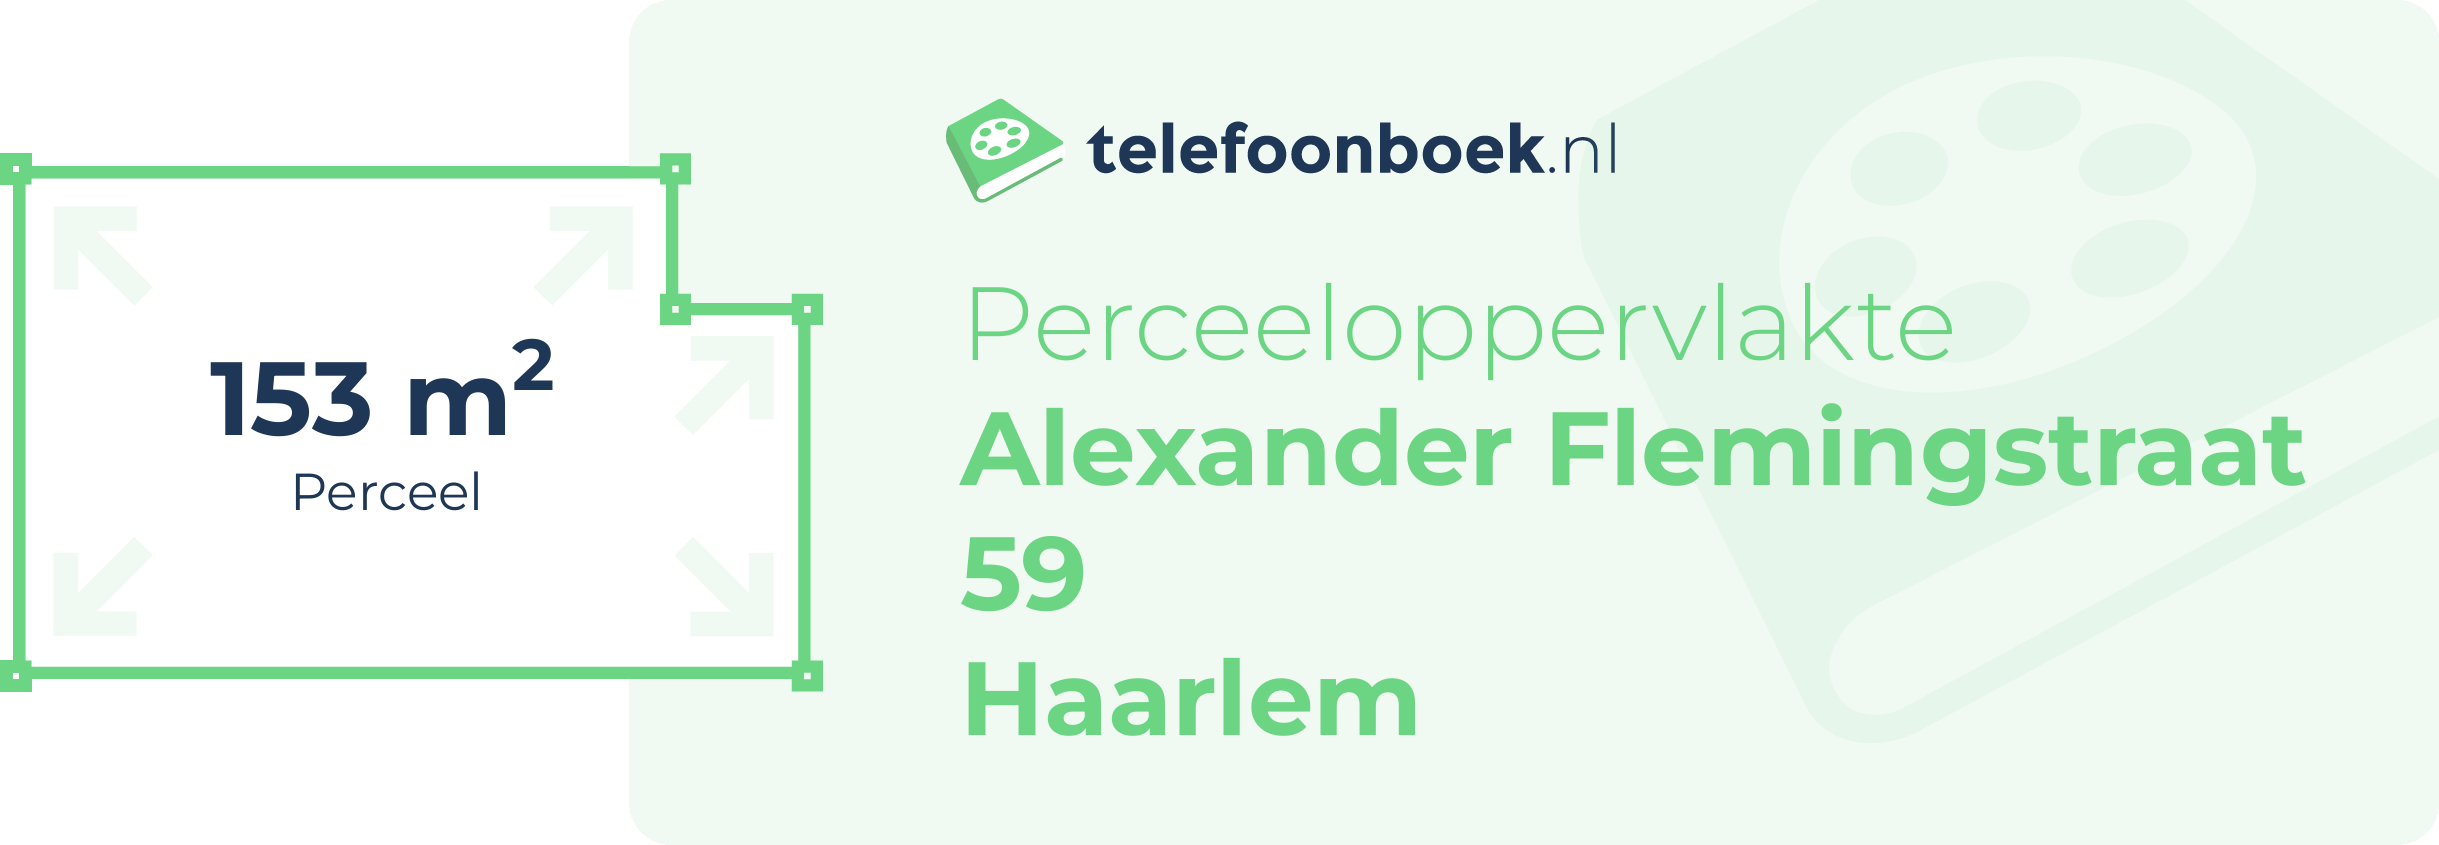 Perceeloppervlakte Alexander Flemingstraat 59 Haarlem